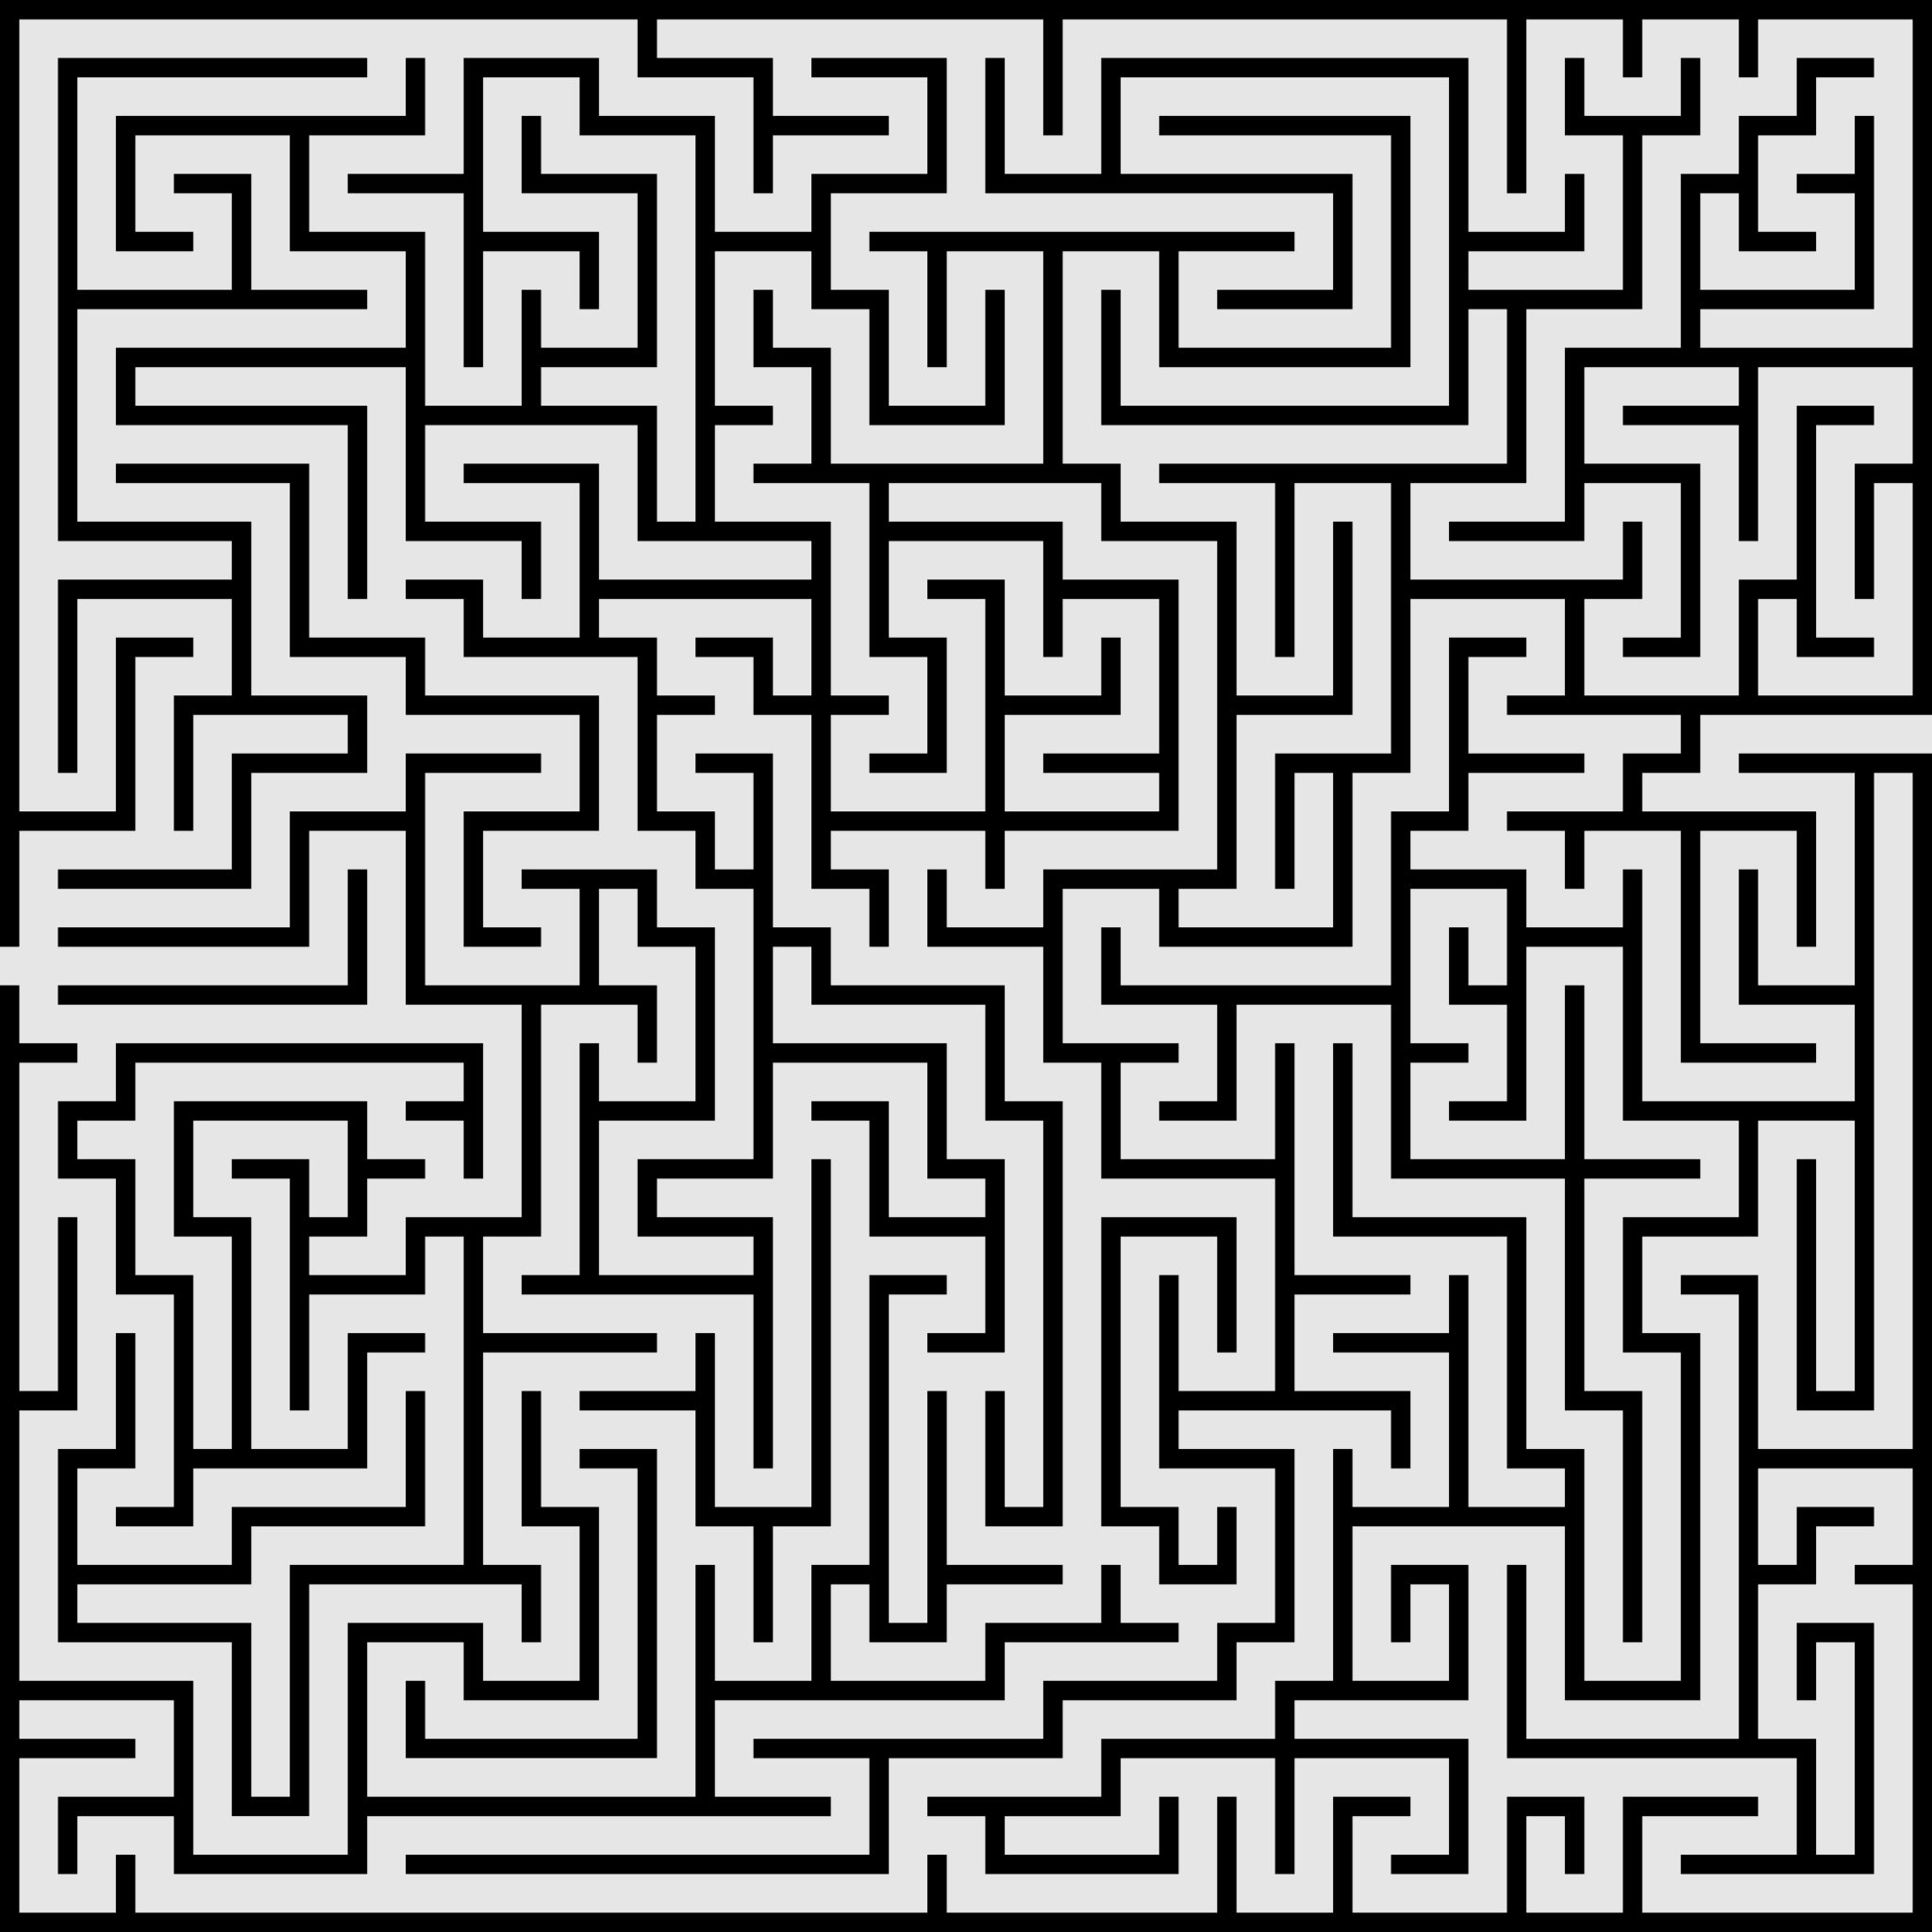 Labirinto divisao simples - Recursos de ensino